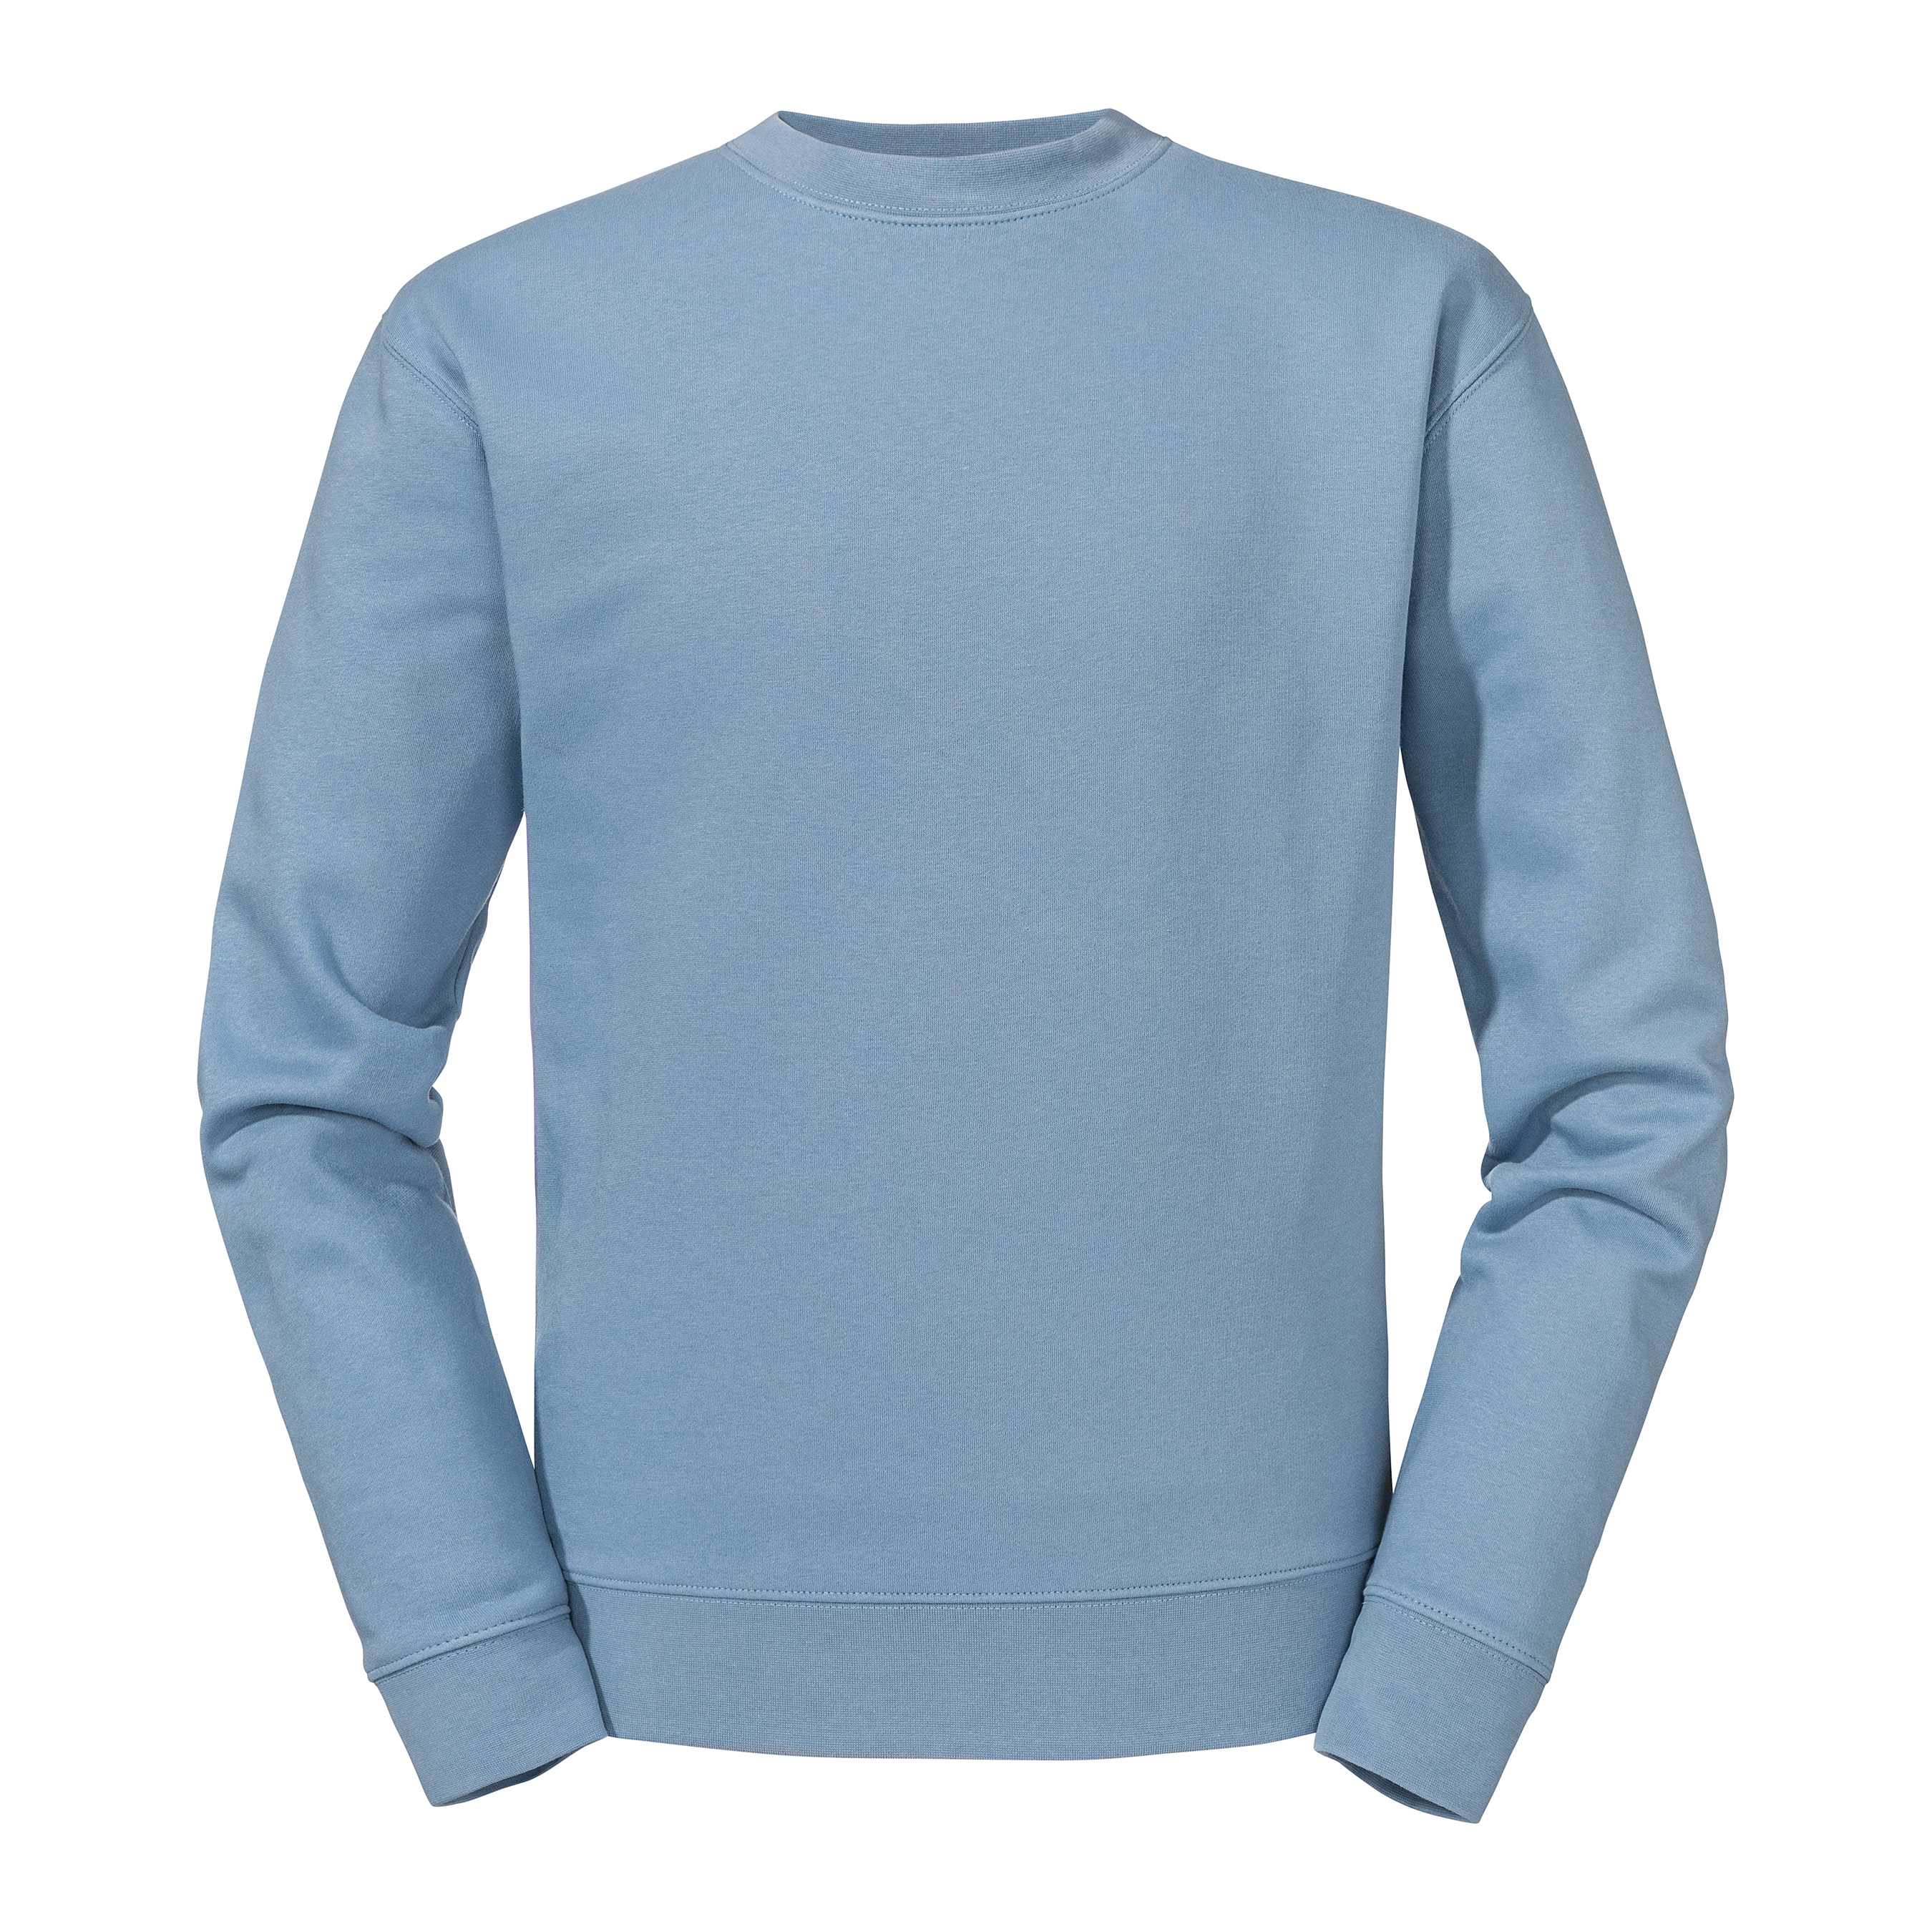 Bluza unisex  - Authentic R262M 80% gładkiej bawełny ring-spun 20% poliester (trójwarstwowa tkanina) 280g